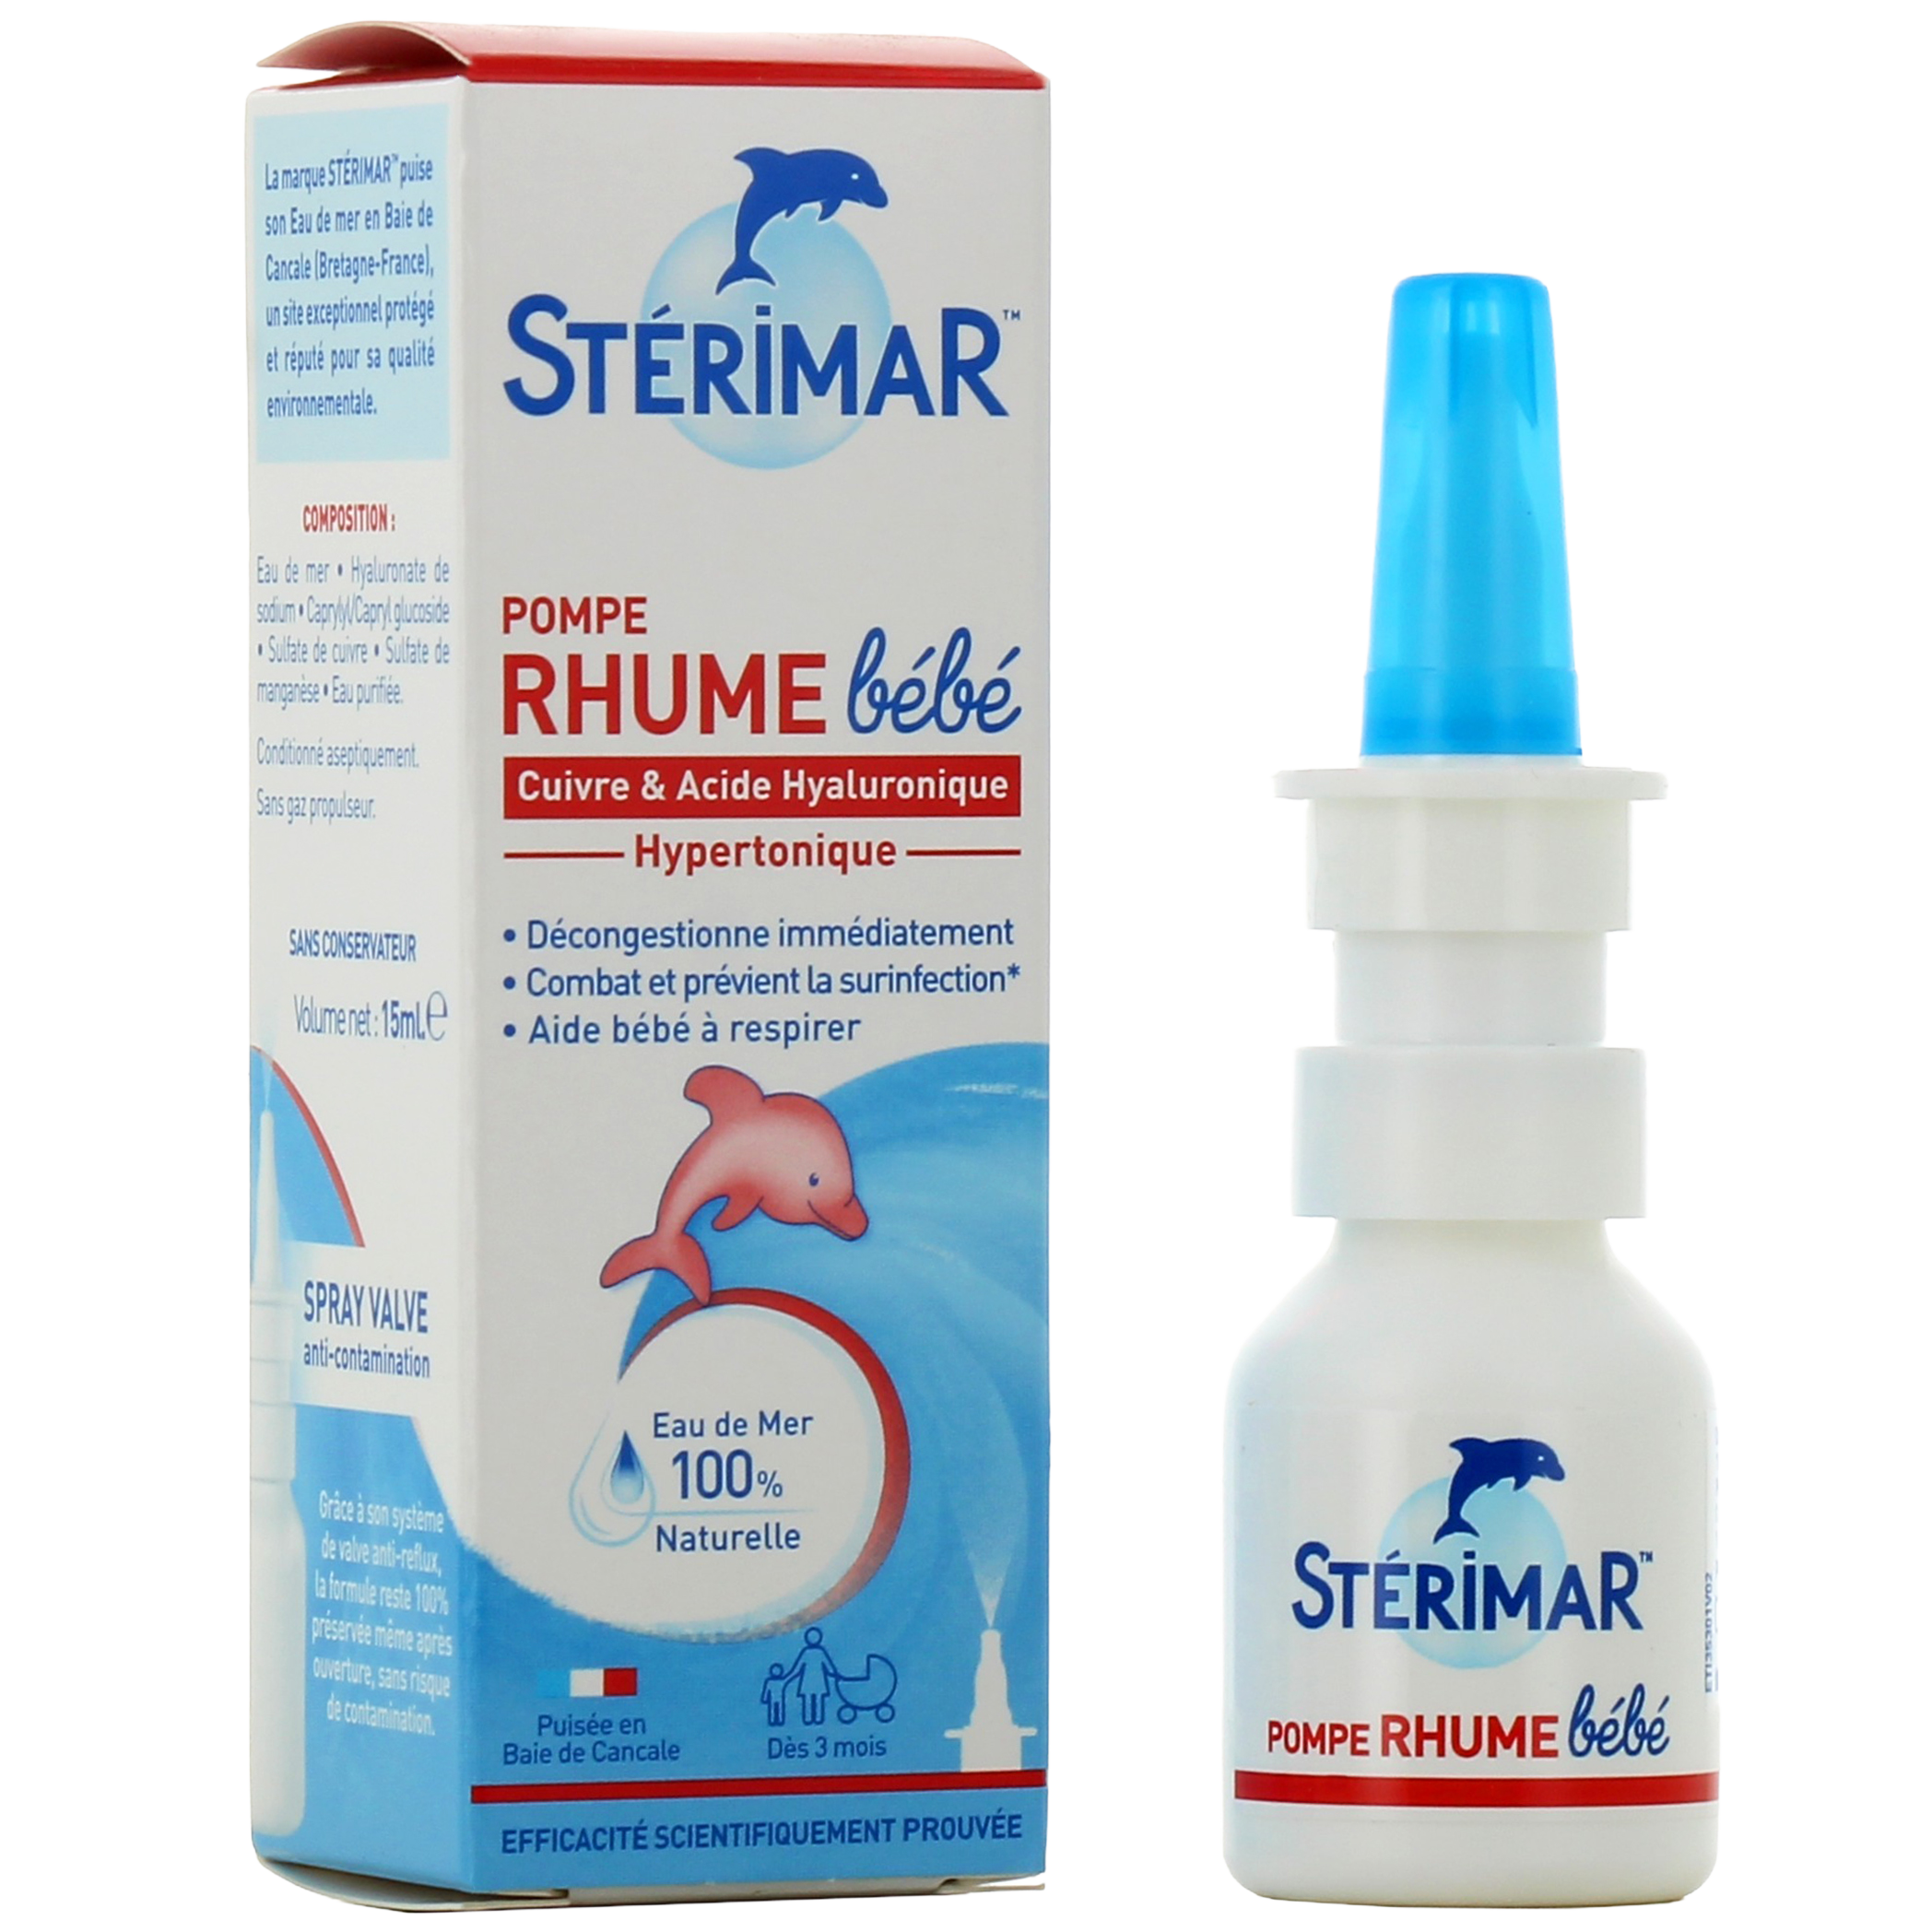 Spray hypertonique hygiène du nez bébé de Stérimar - Nez bouché